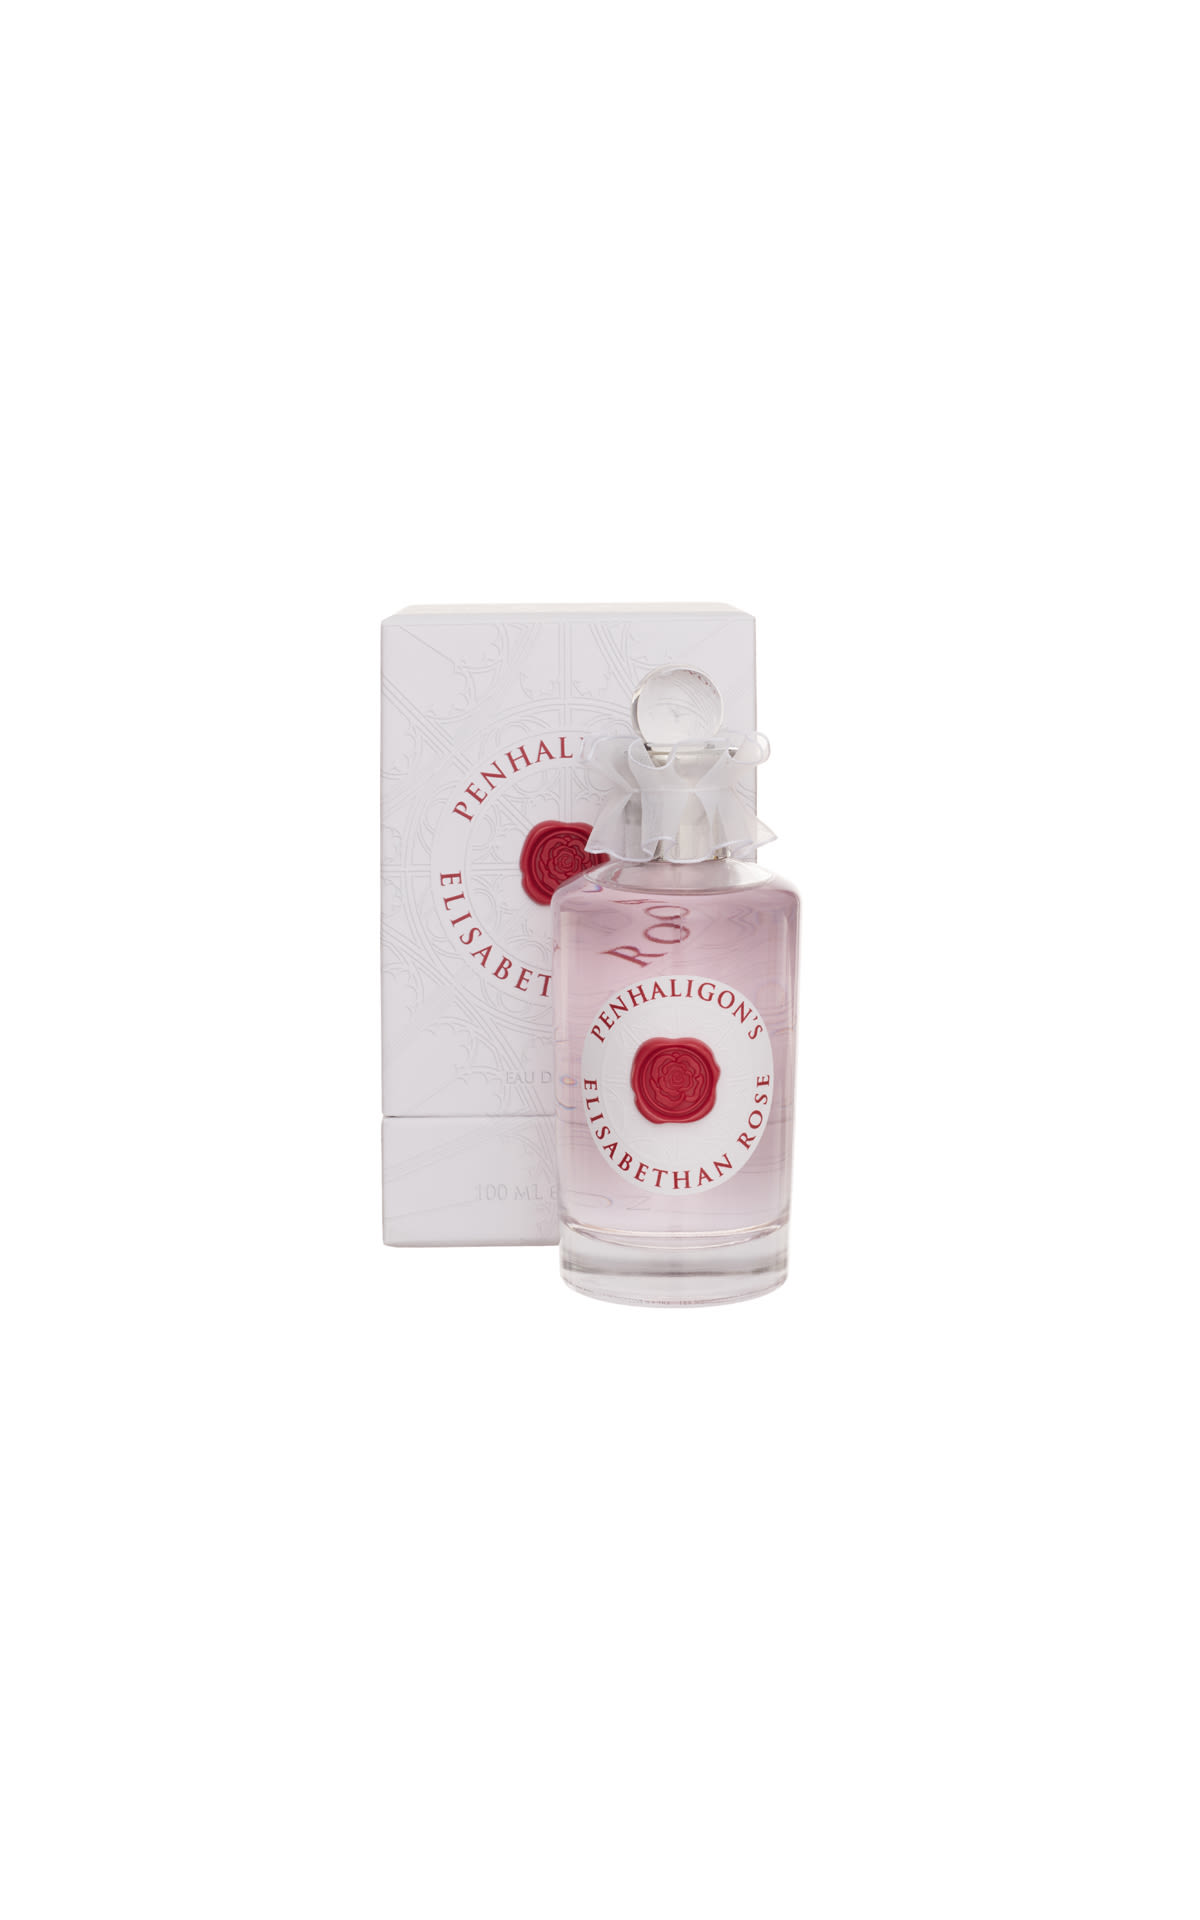 Penhaligon's Elisabethan rose eau de parfum 100ml from Bicester Village